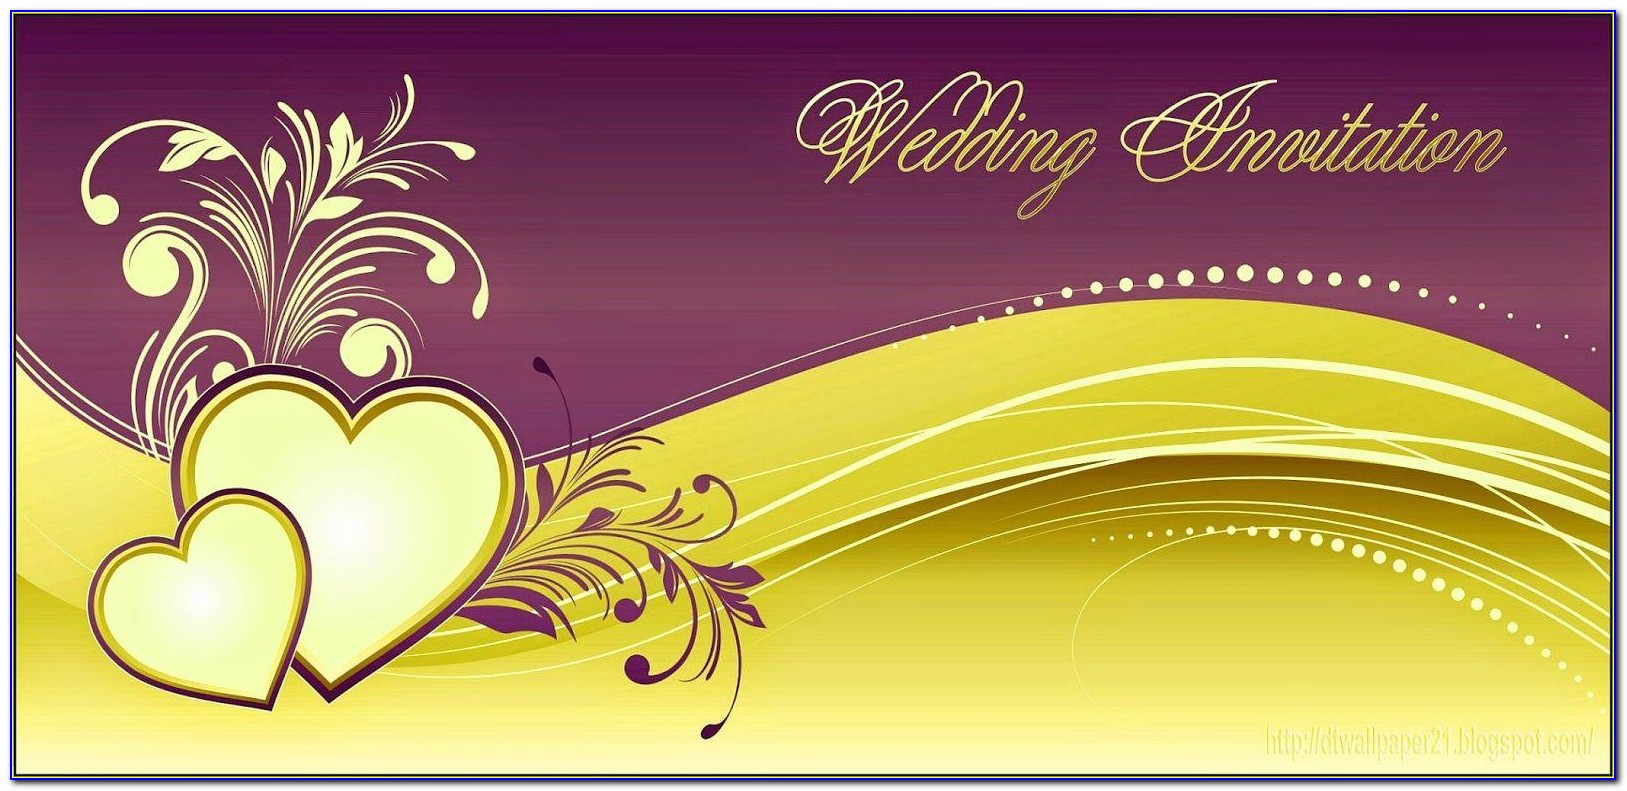 Wedding Invitation Background Freepik